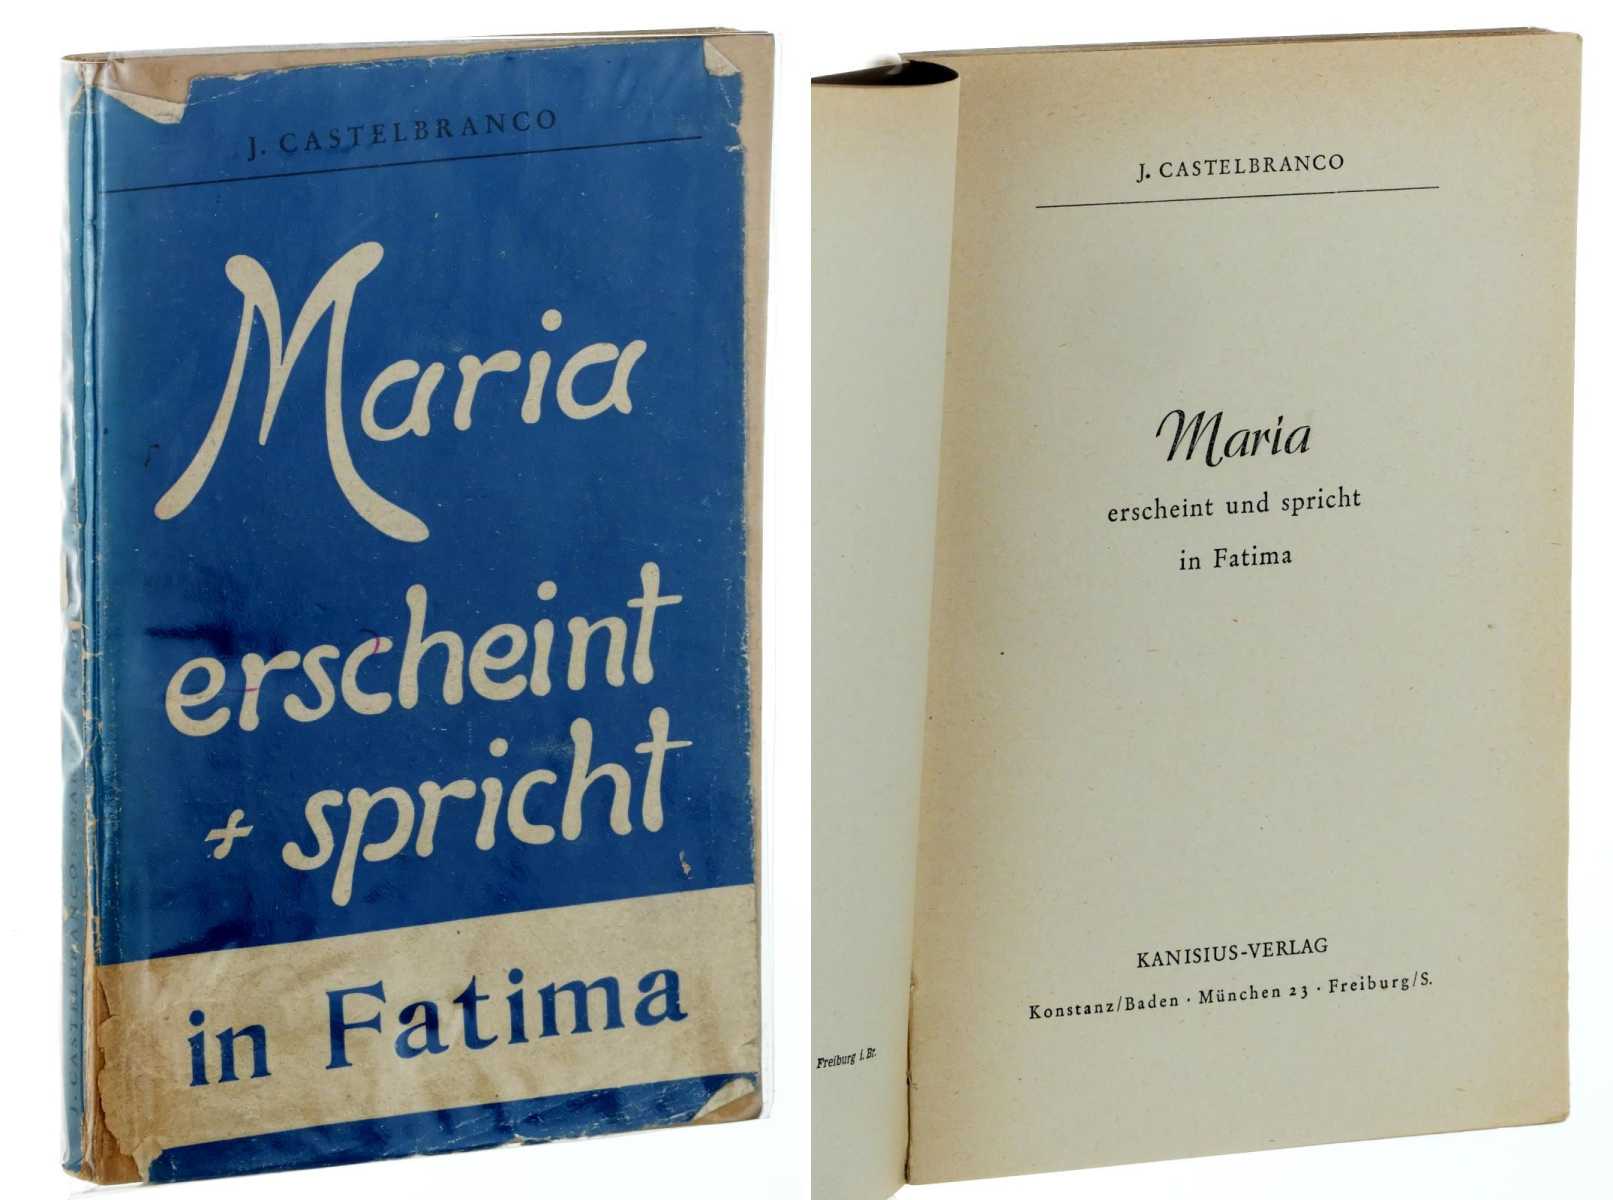 Castelbranco, Jean Joseph:  Maria erscheint und spricht in Fatima. 